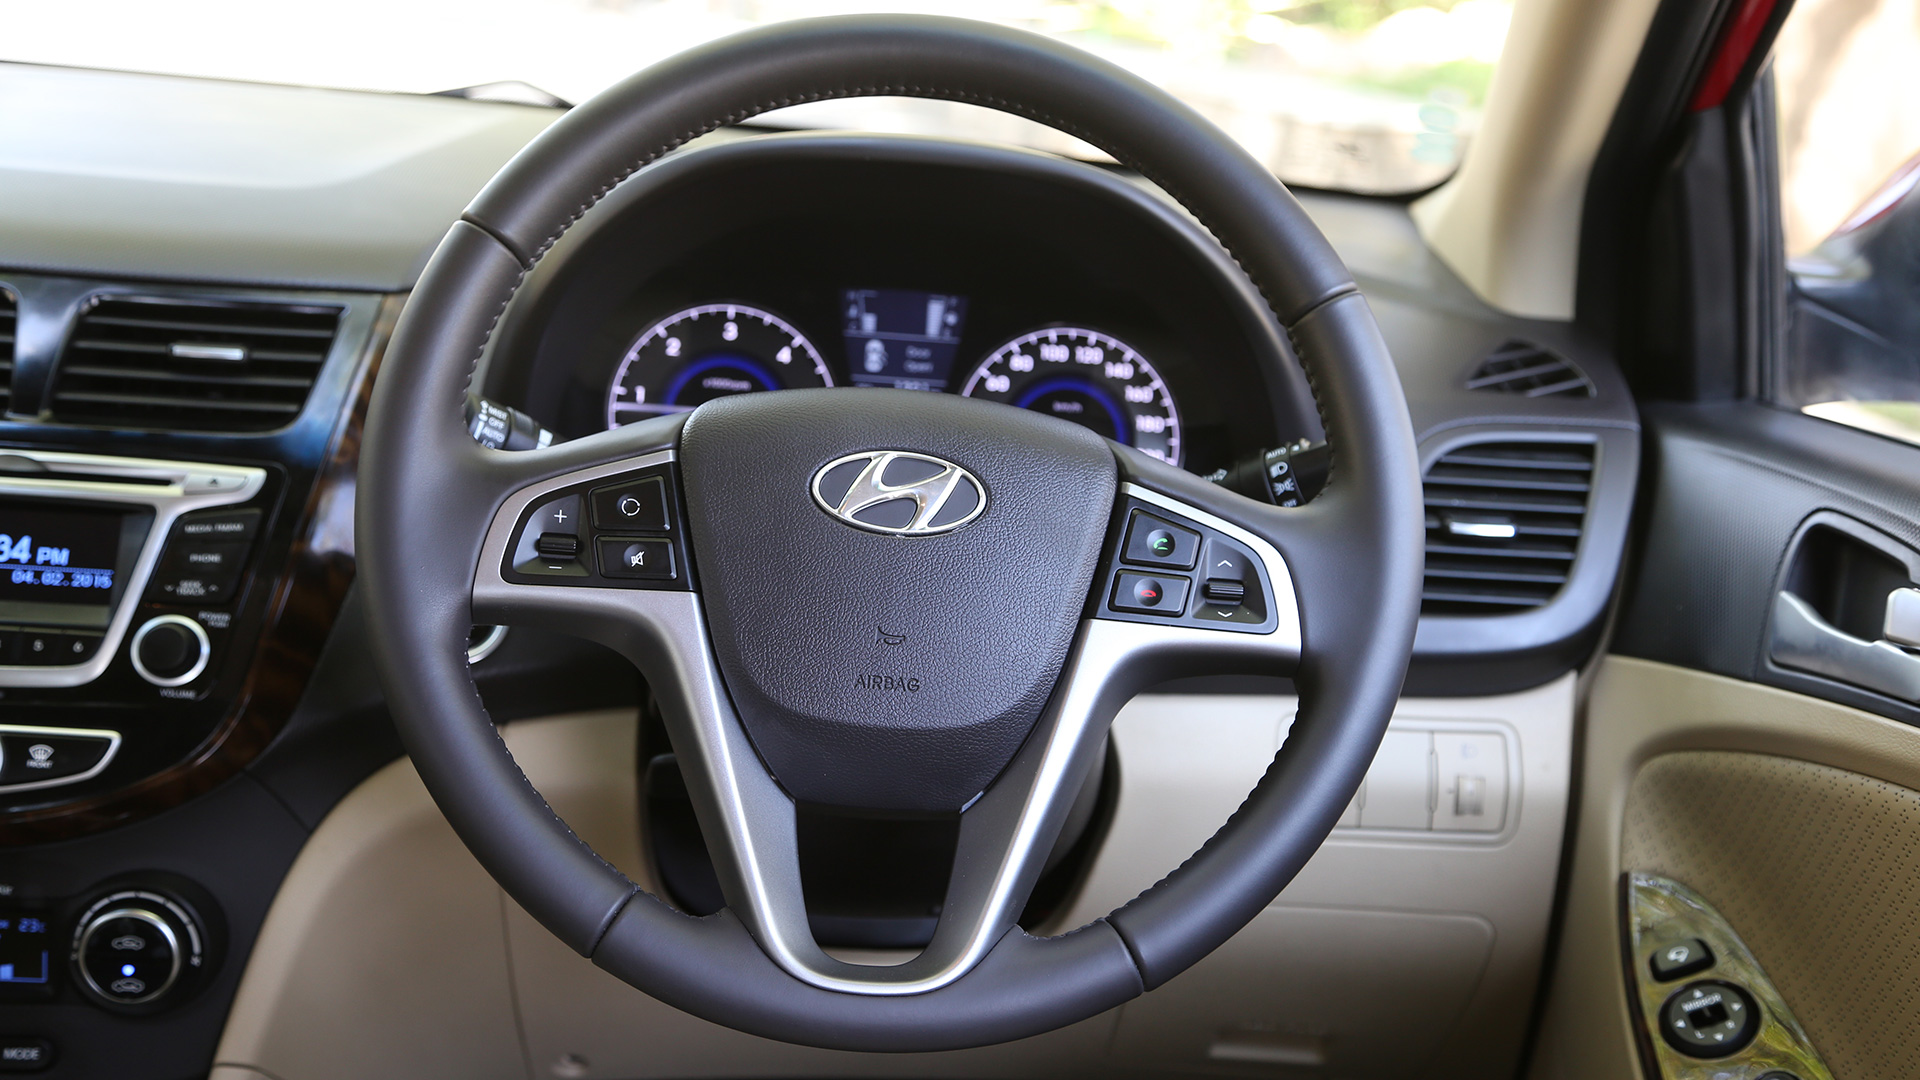 Hyundai-4s-fluidic-verna-2015 Interior